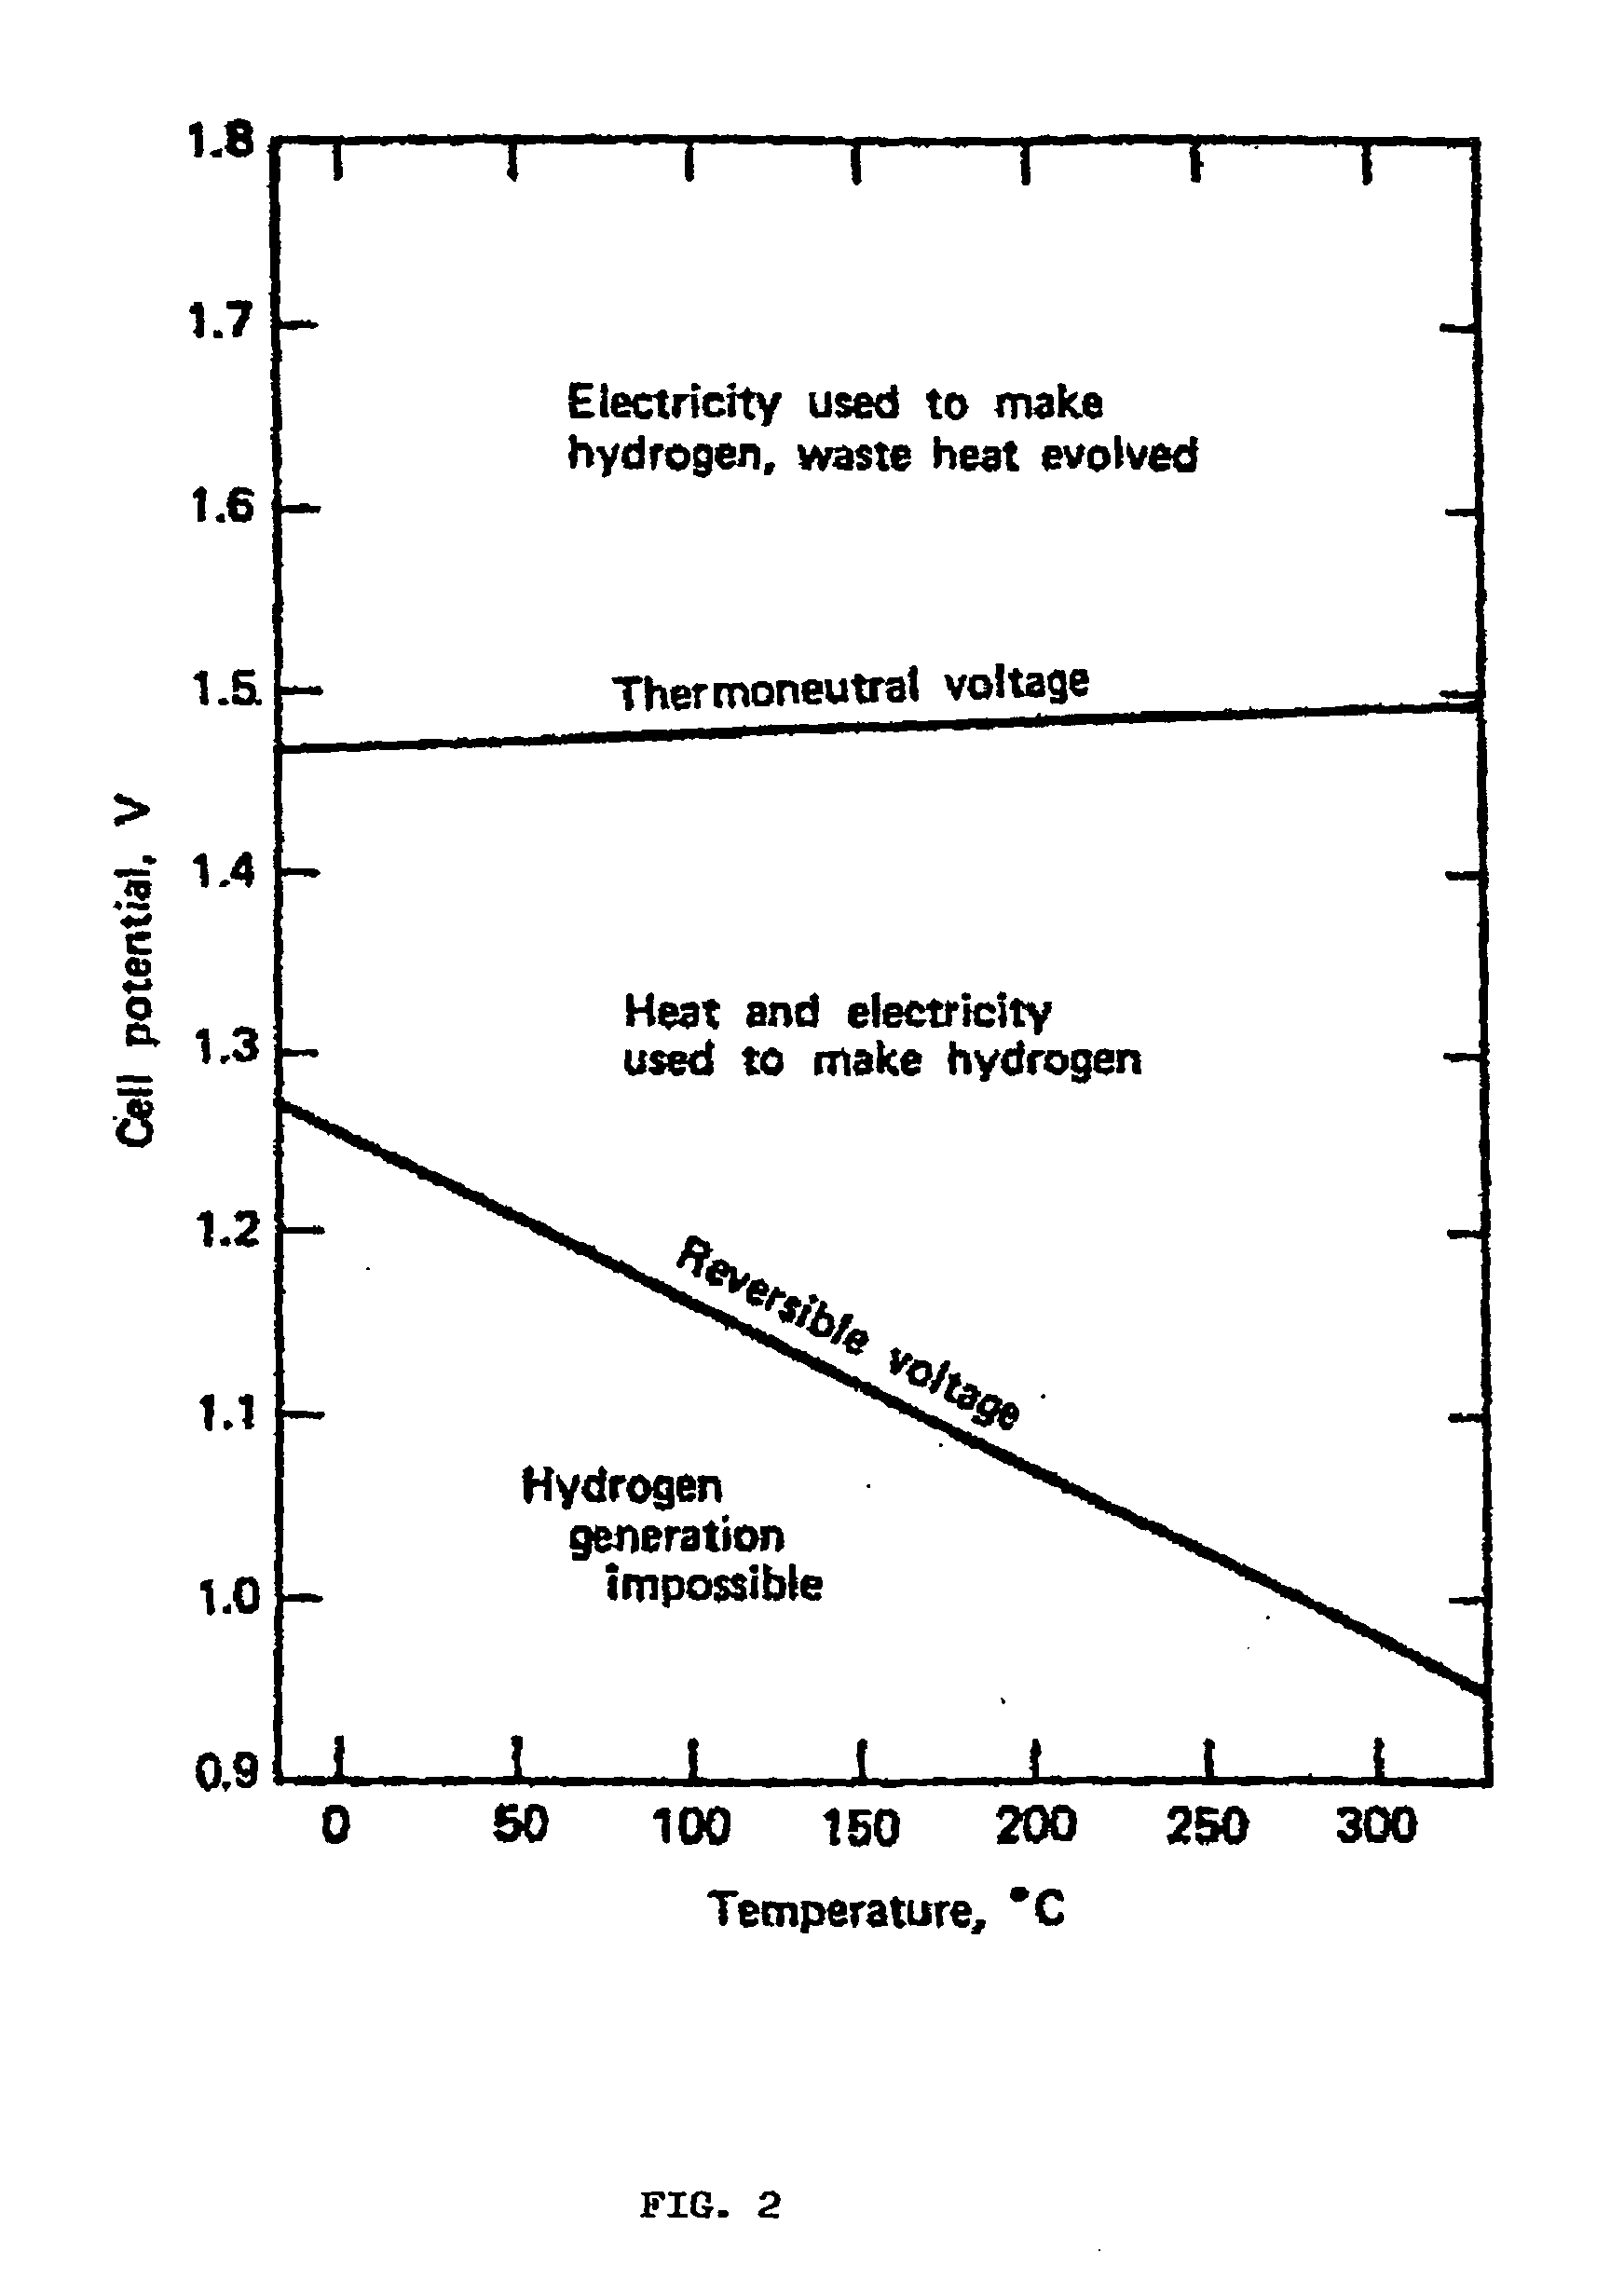 Electrochemical thermodynamo